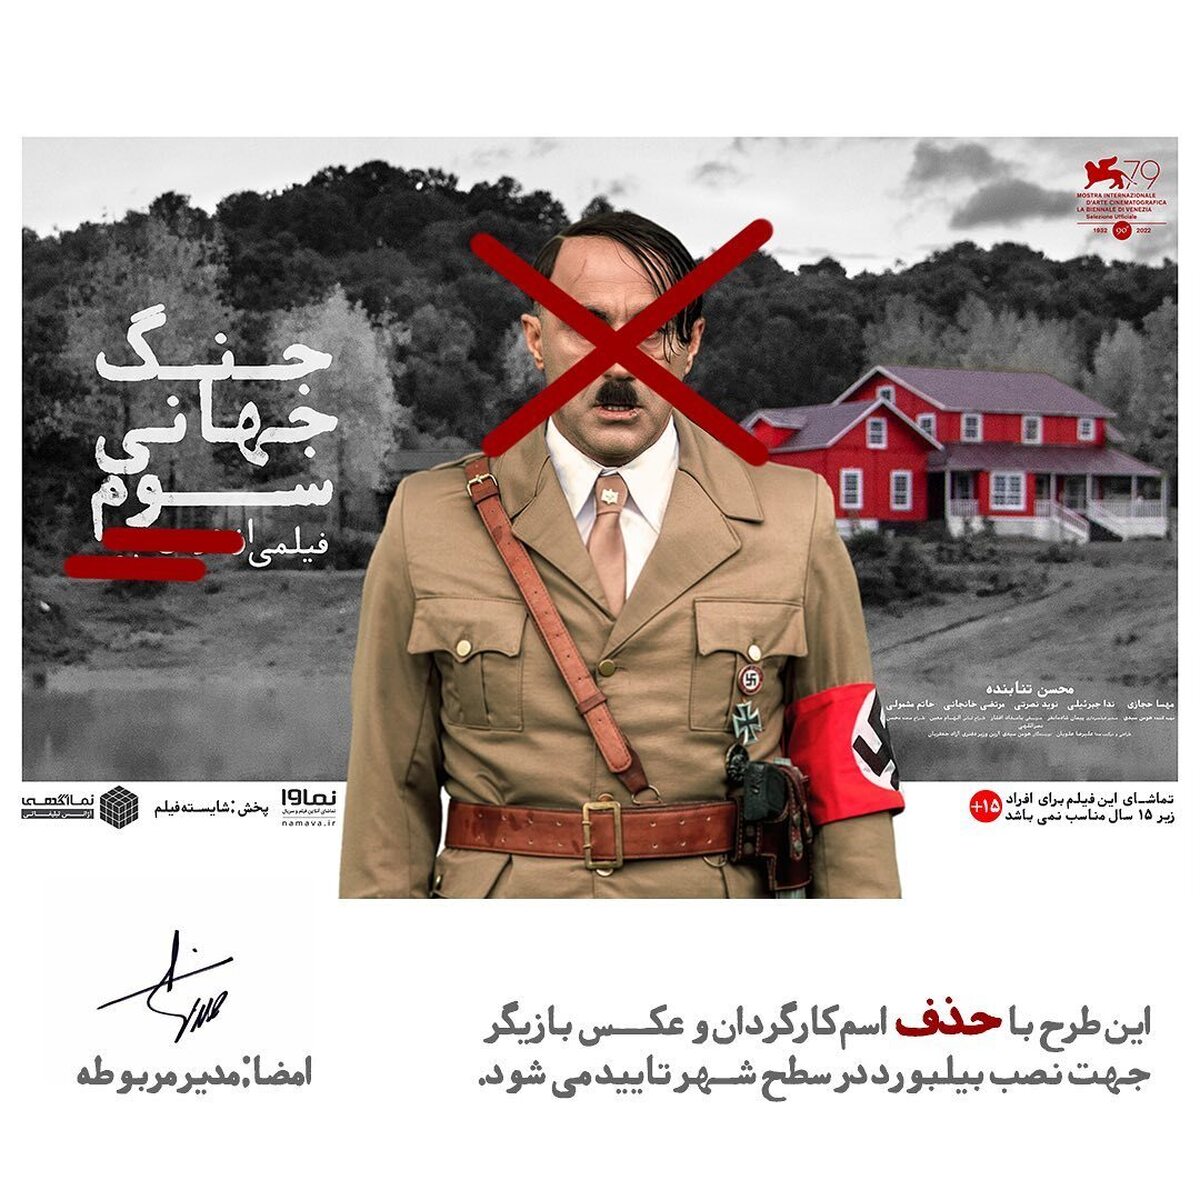 سانسور عکس محسن تنابنده و نام هومن سیدی از بیلبورد «جنگ جهانی سوم»!